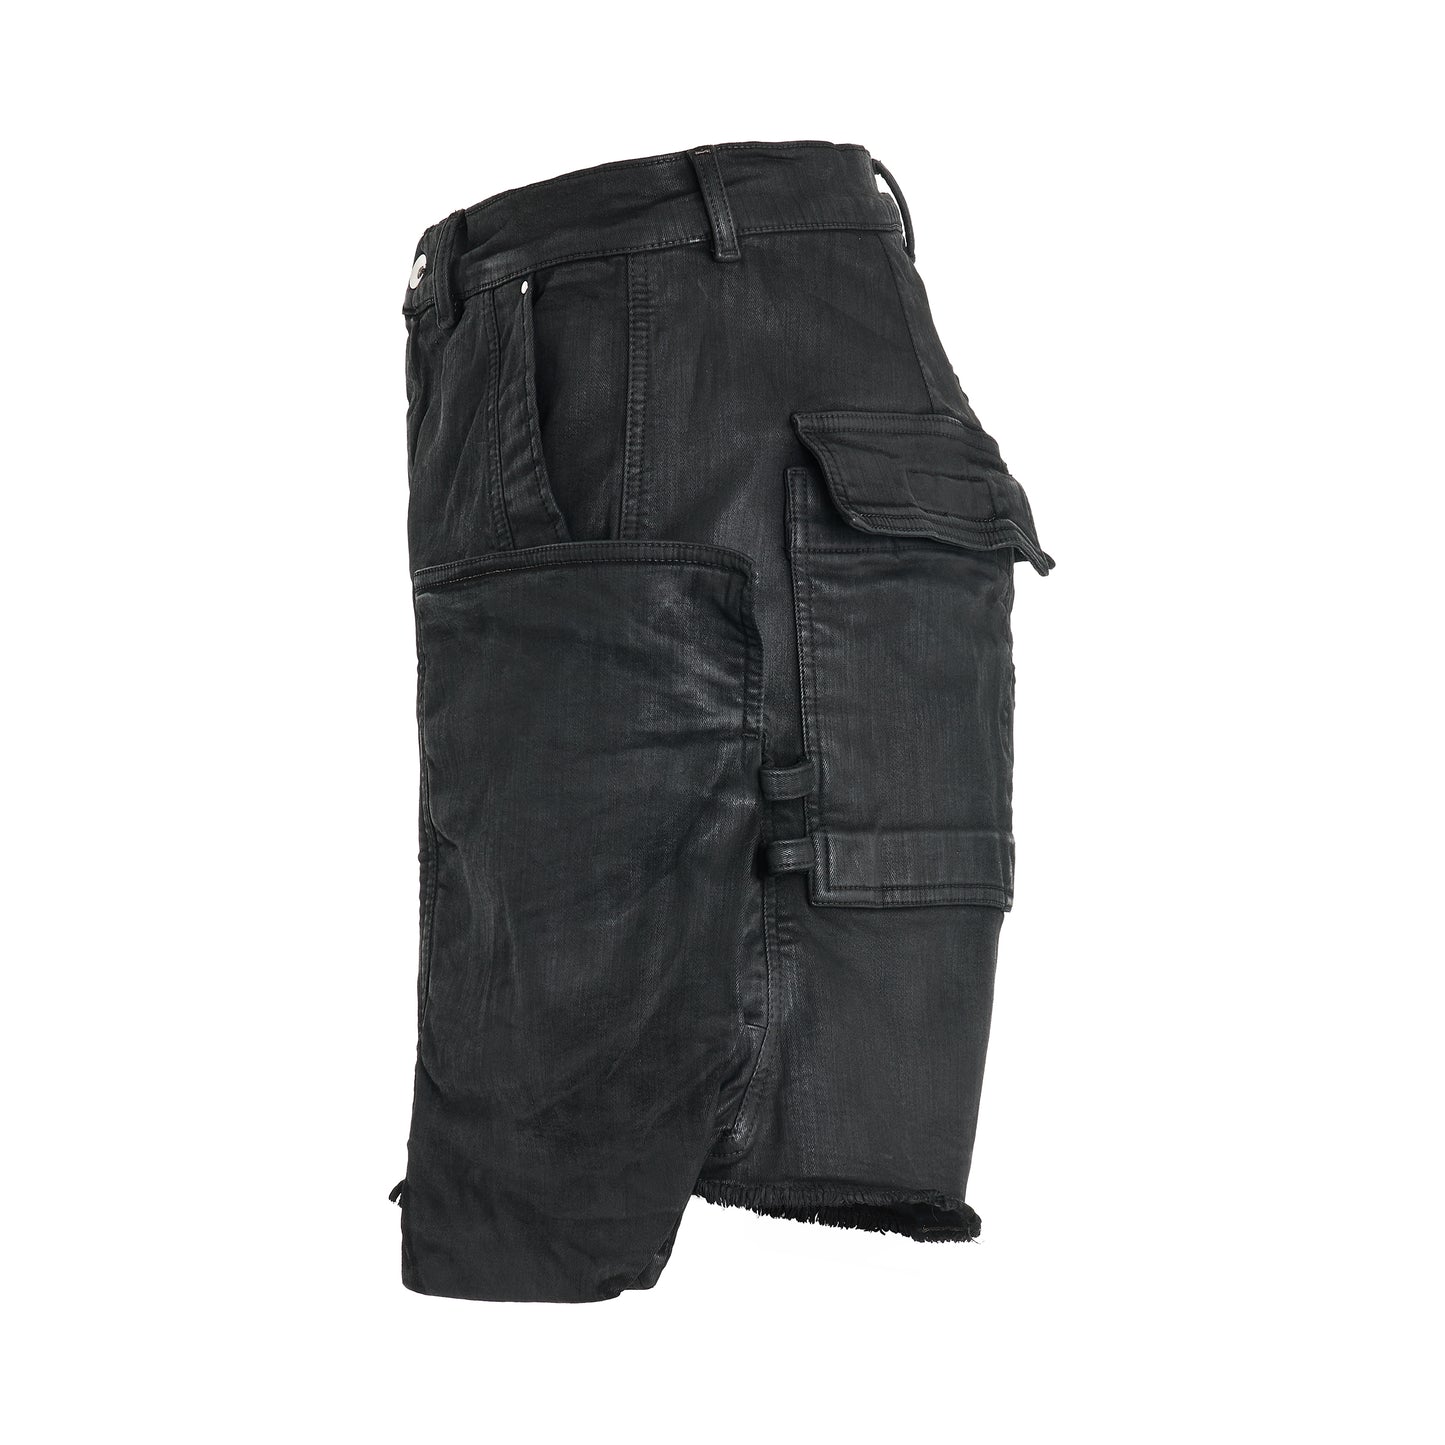 Stefan Cargo Shorts in Black Wax